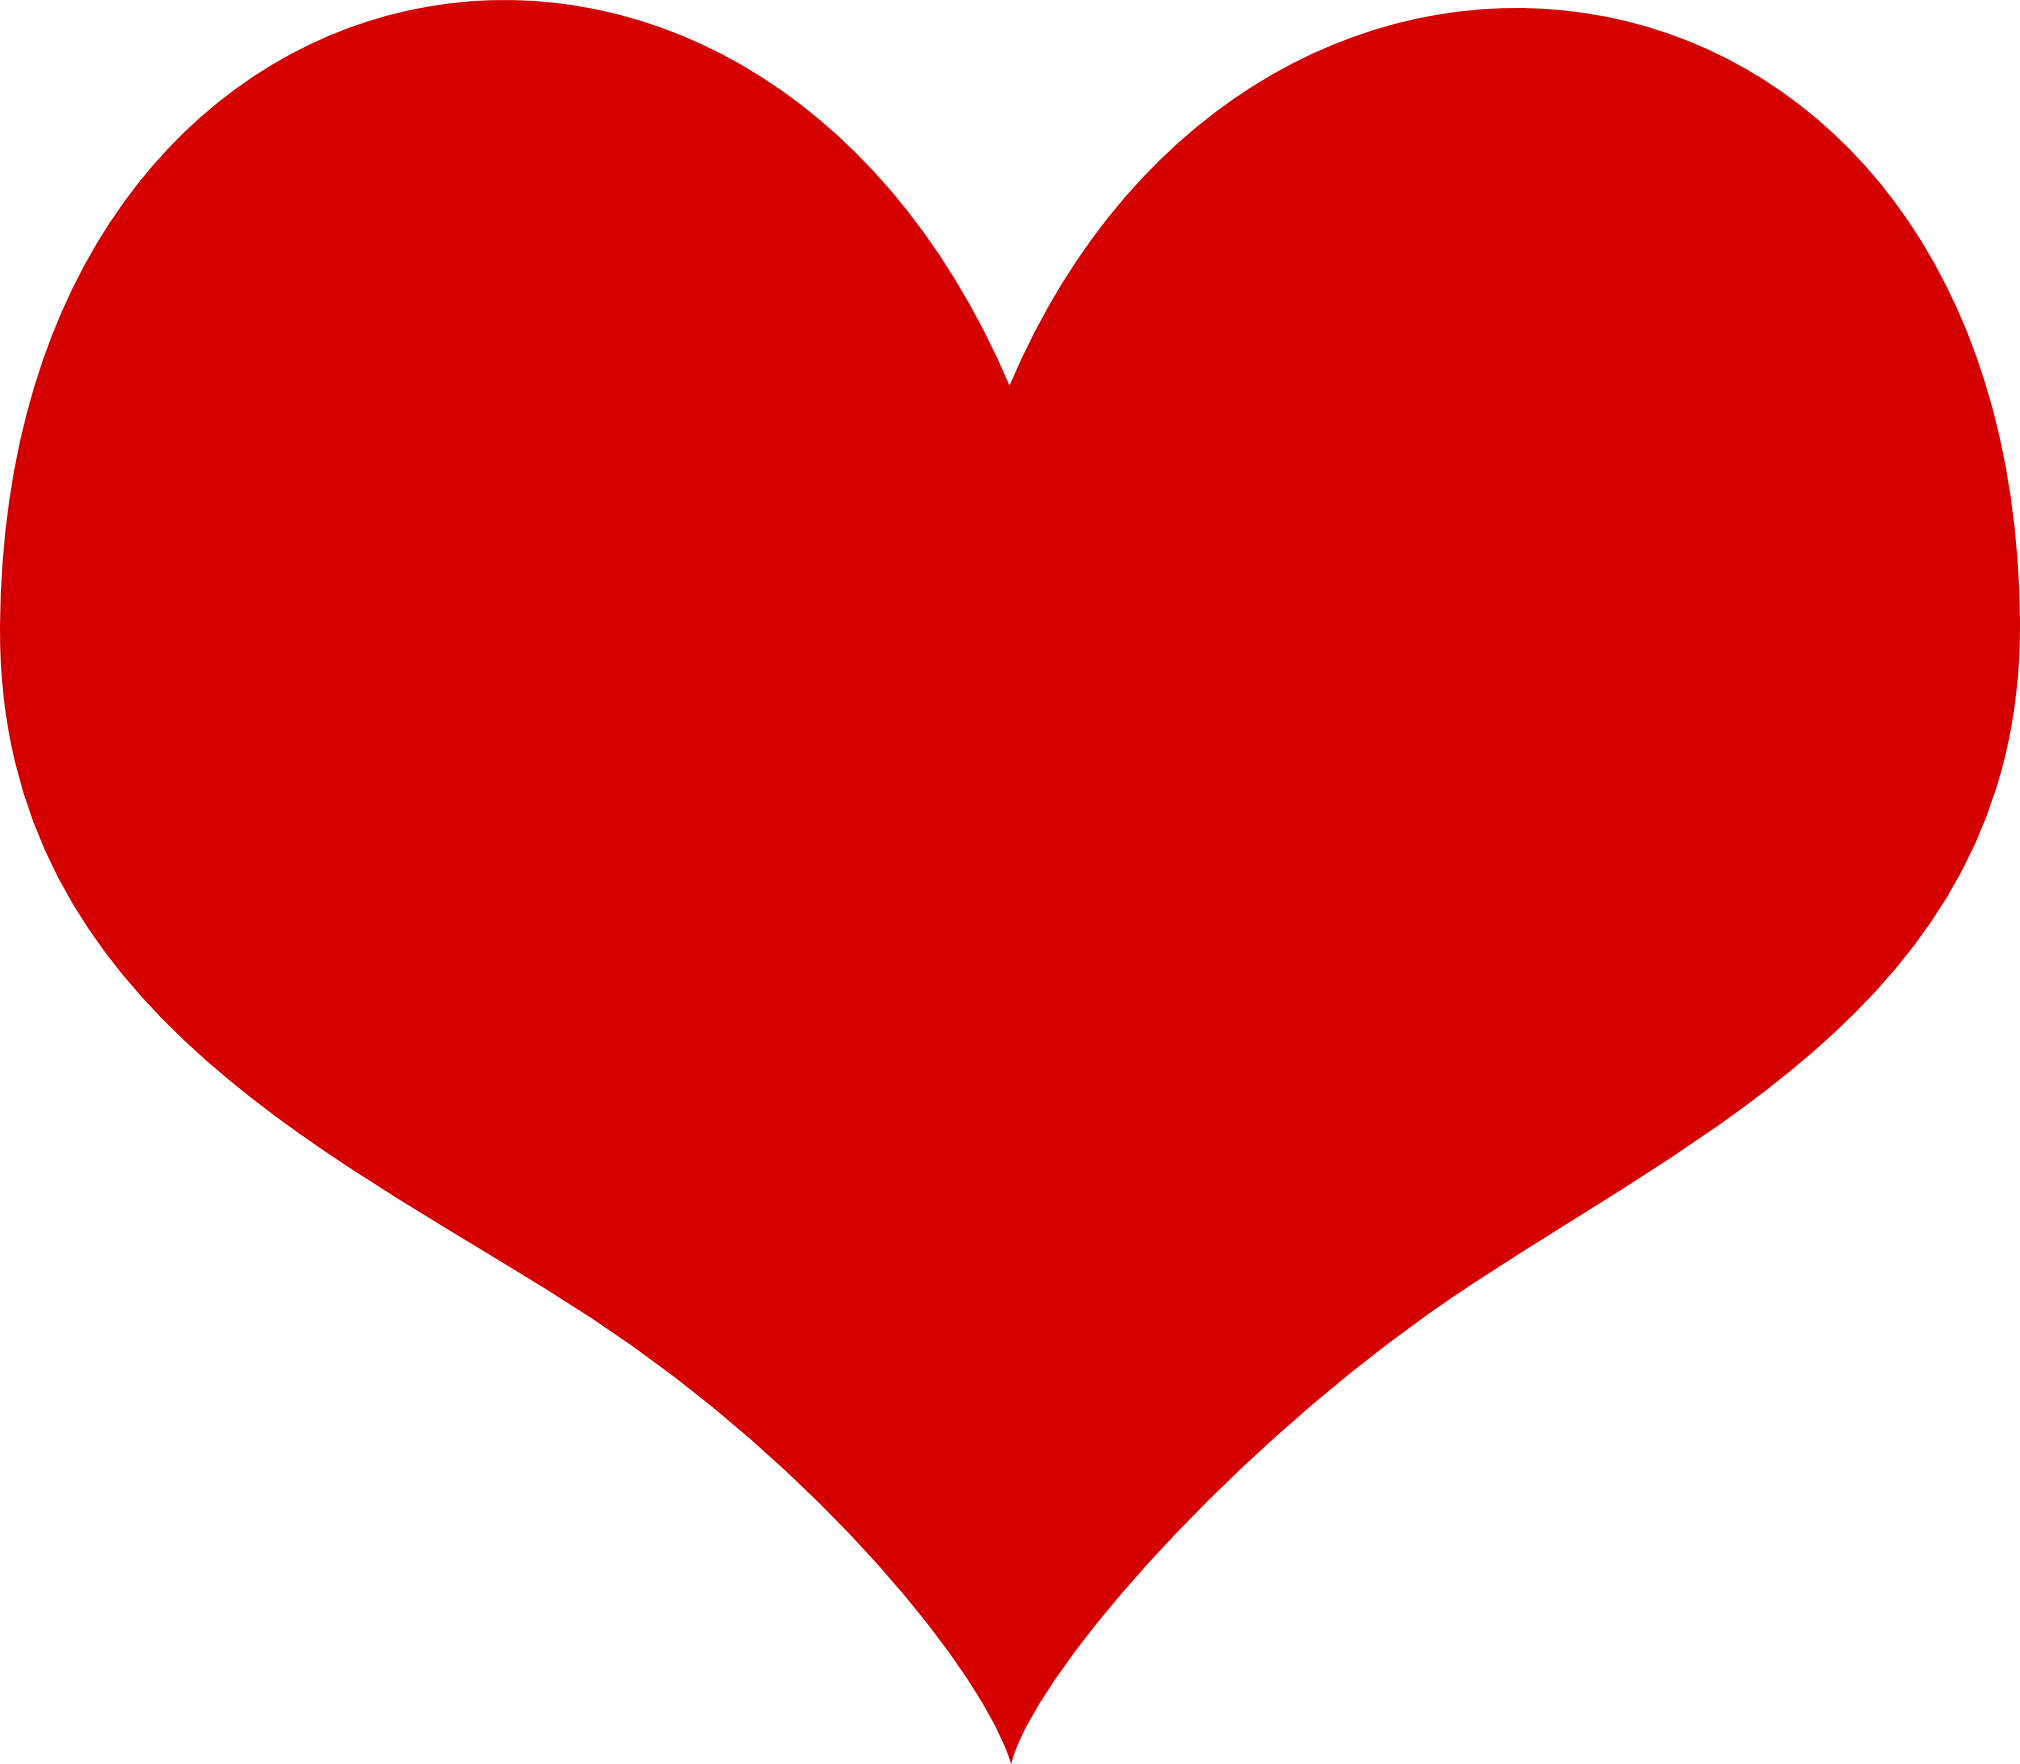 Hearts free heart clip art do